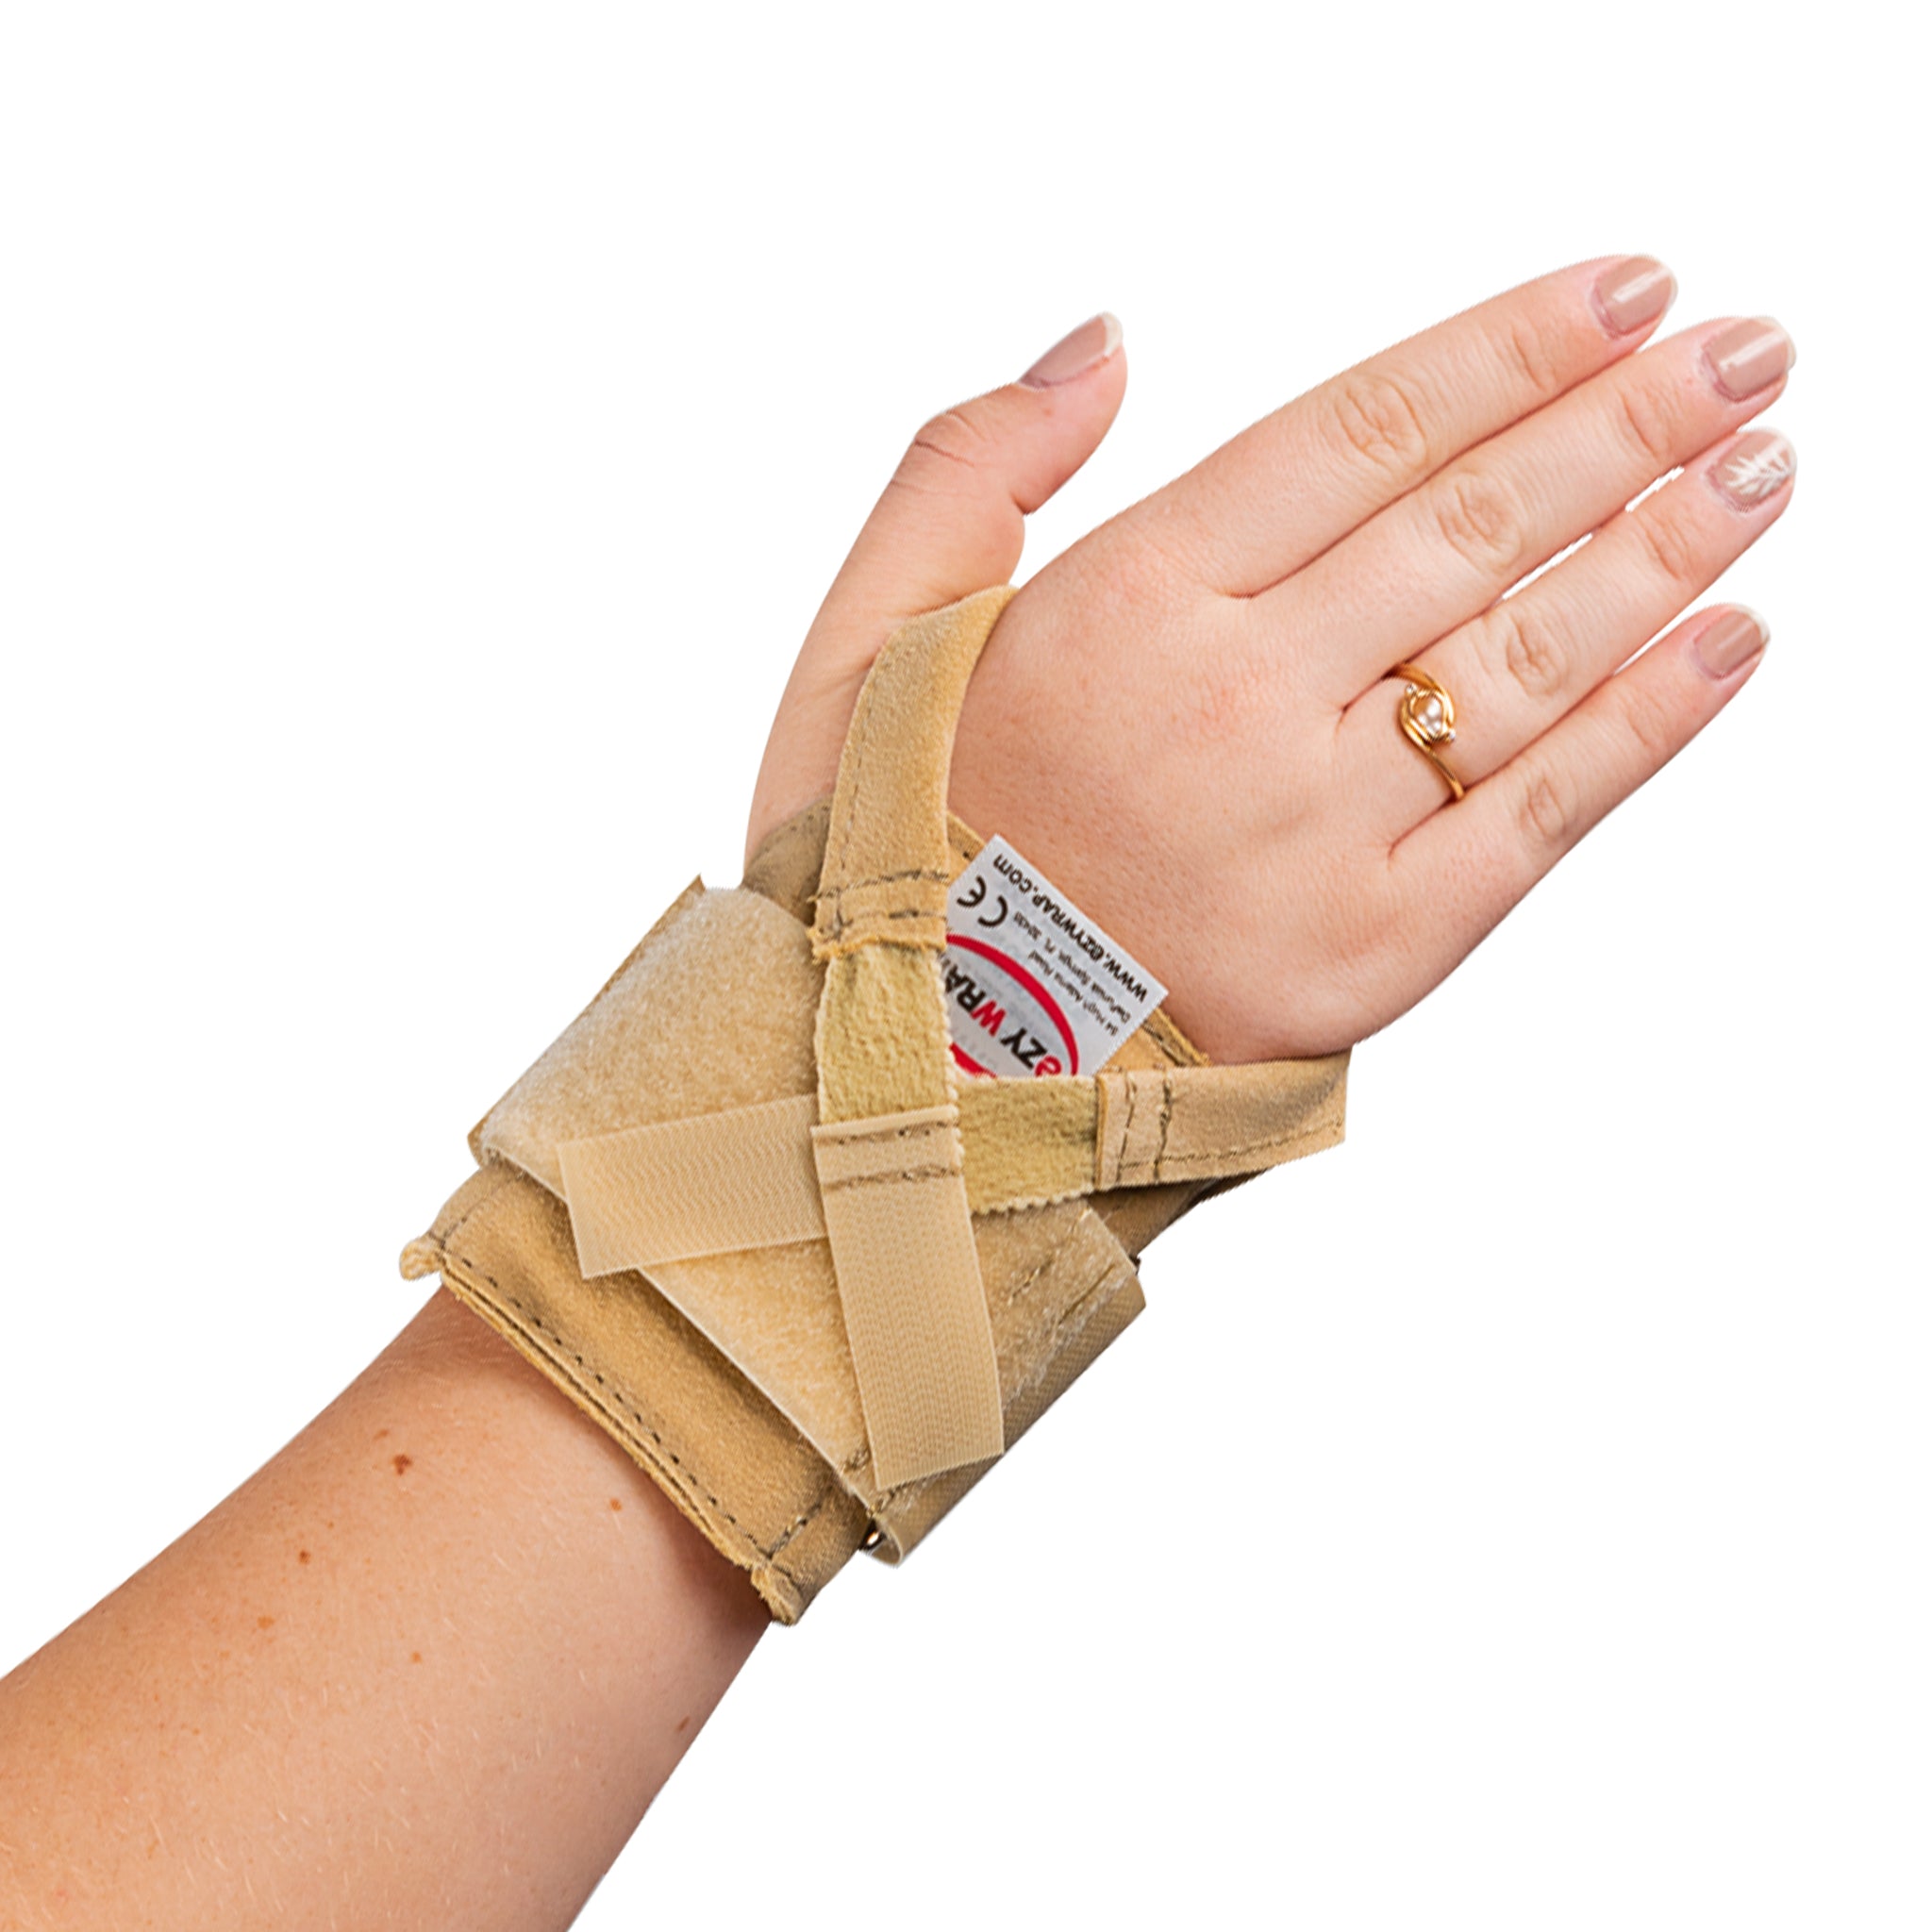 988 - Ezy Pro Brace Gymnast Wrist Supports